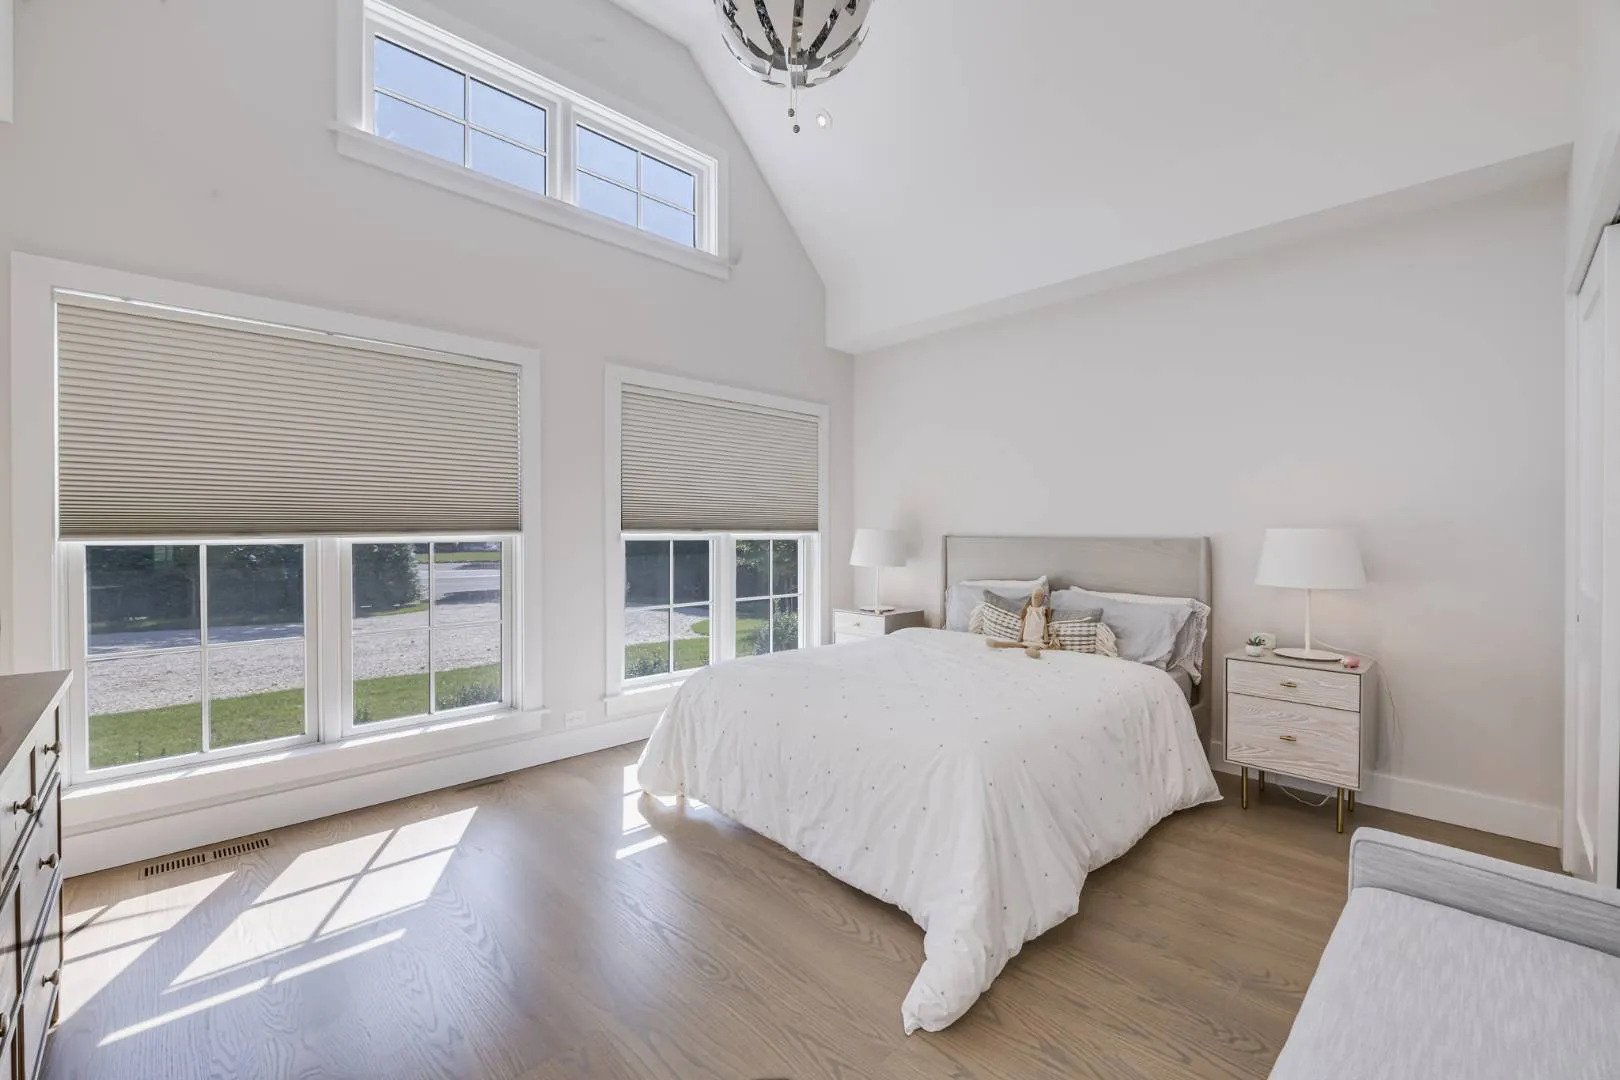 Guest Bedroom in Hamptons Modular Home.jpg